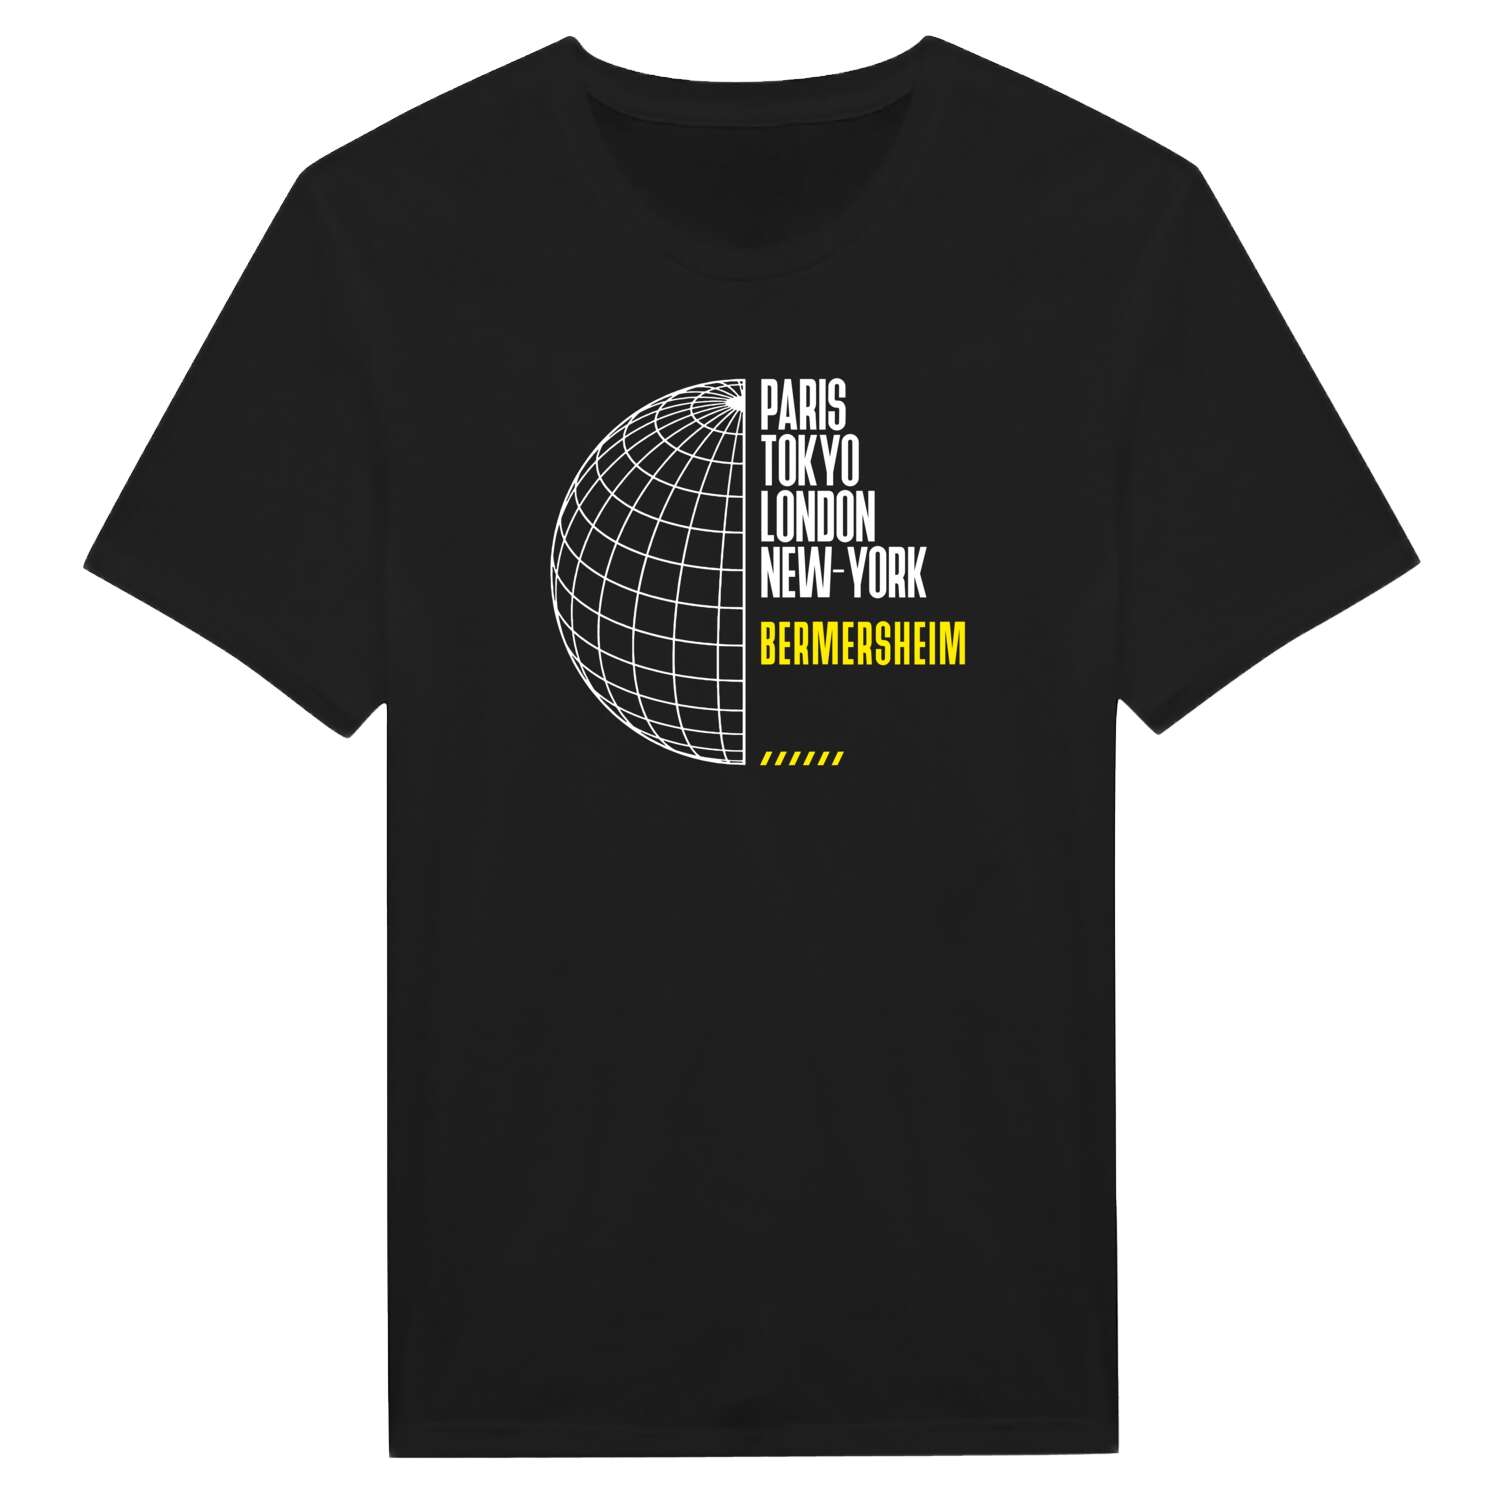 Bermersheim T-Shirt »Paris Tokyo London«